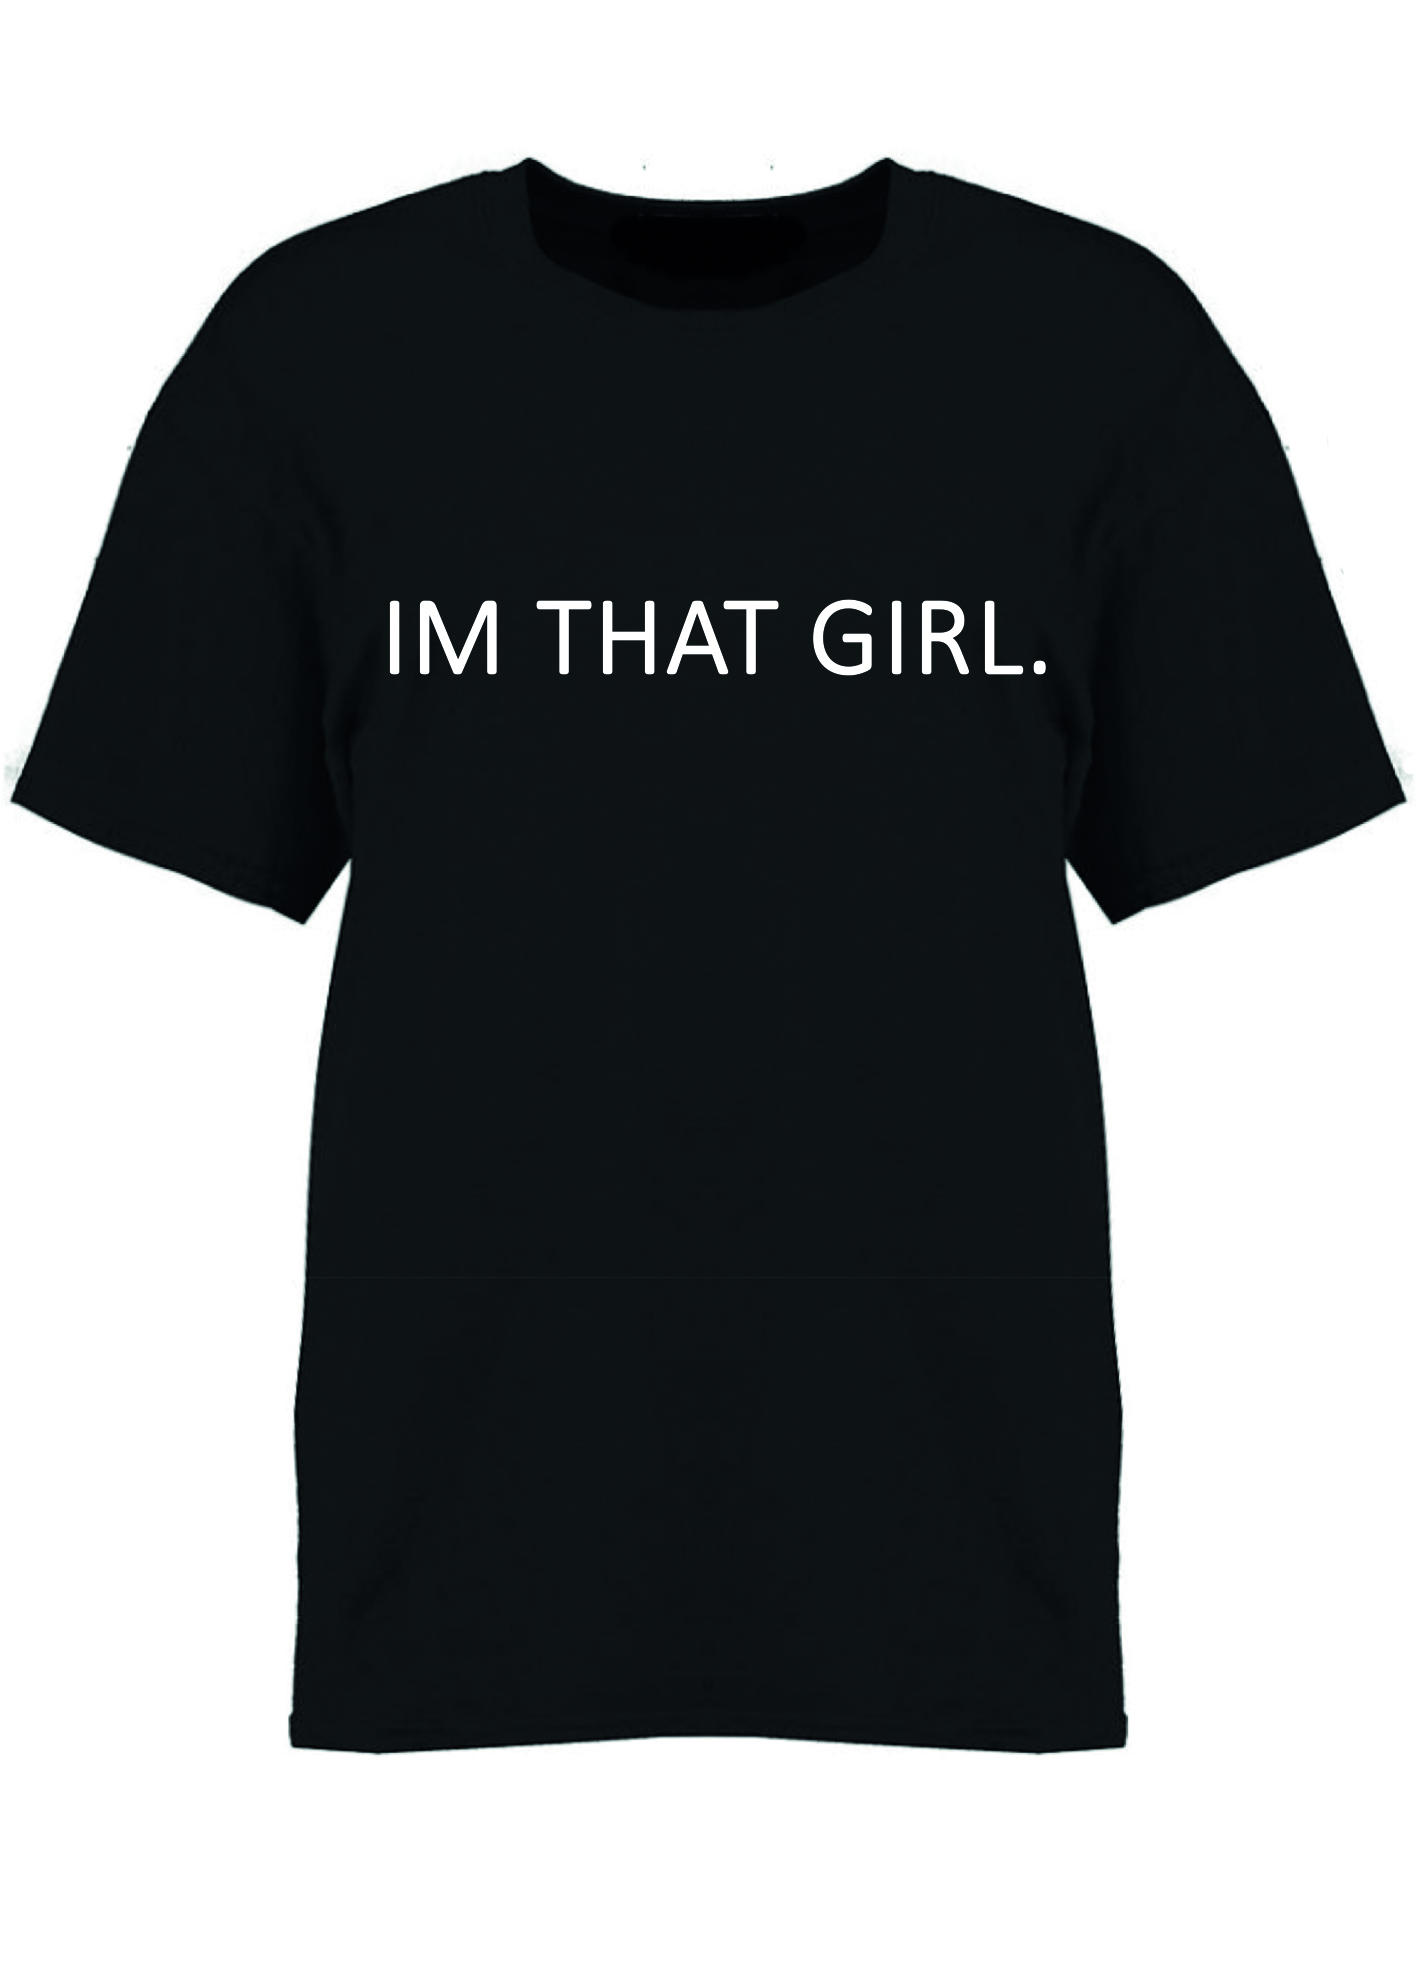 That Girl T-shirt Black